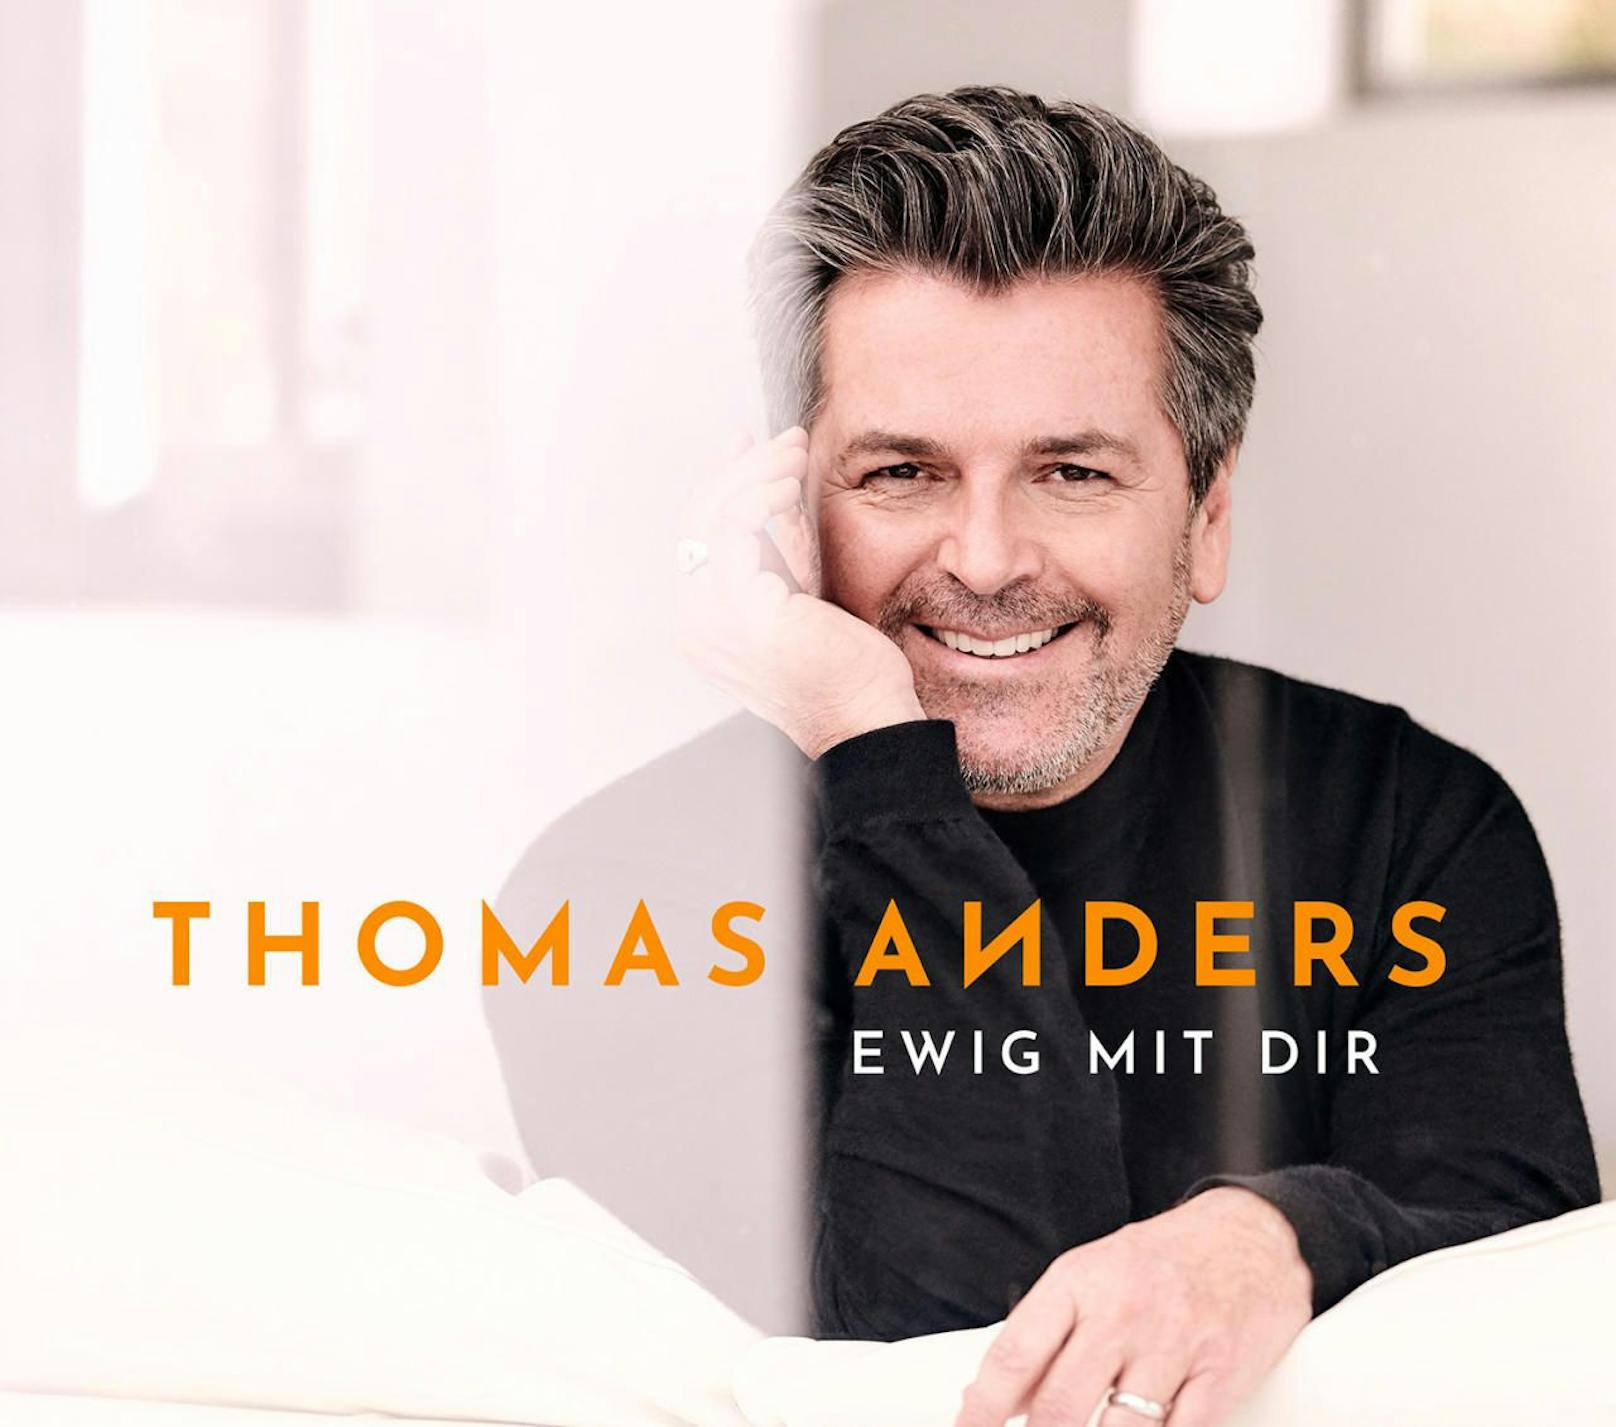 Wien ist Anders! Thomas Anders im Interview